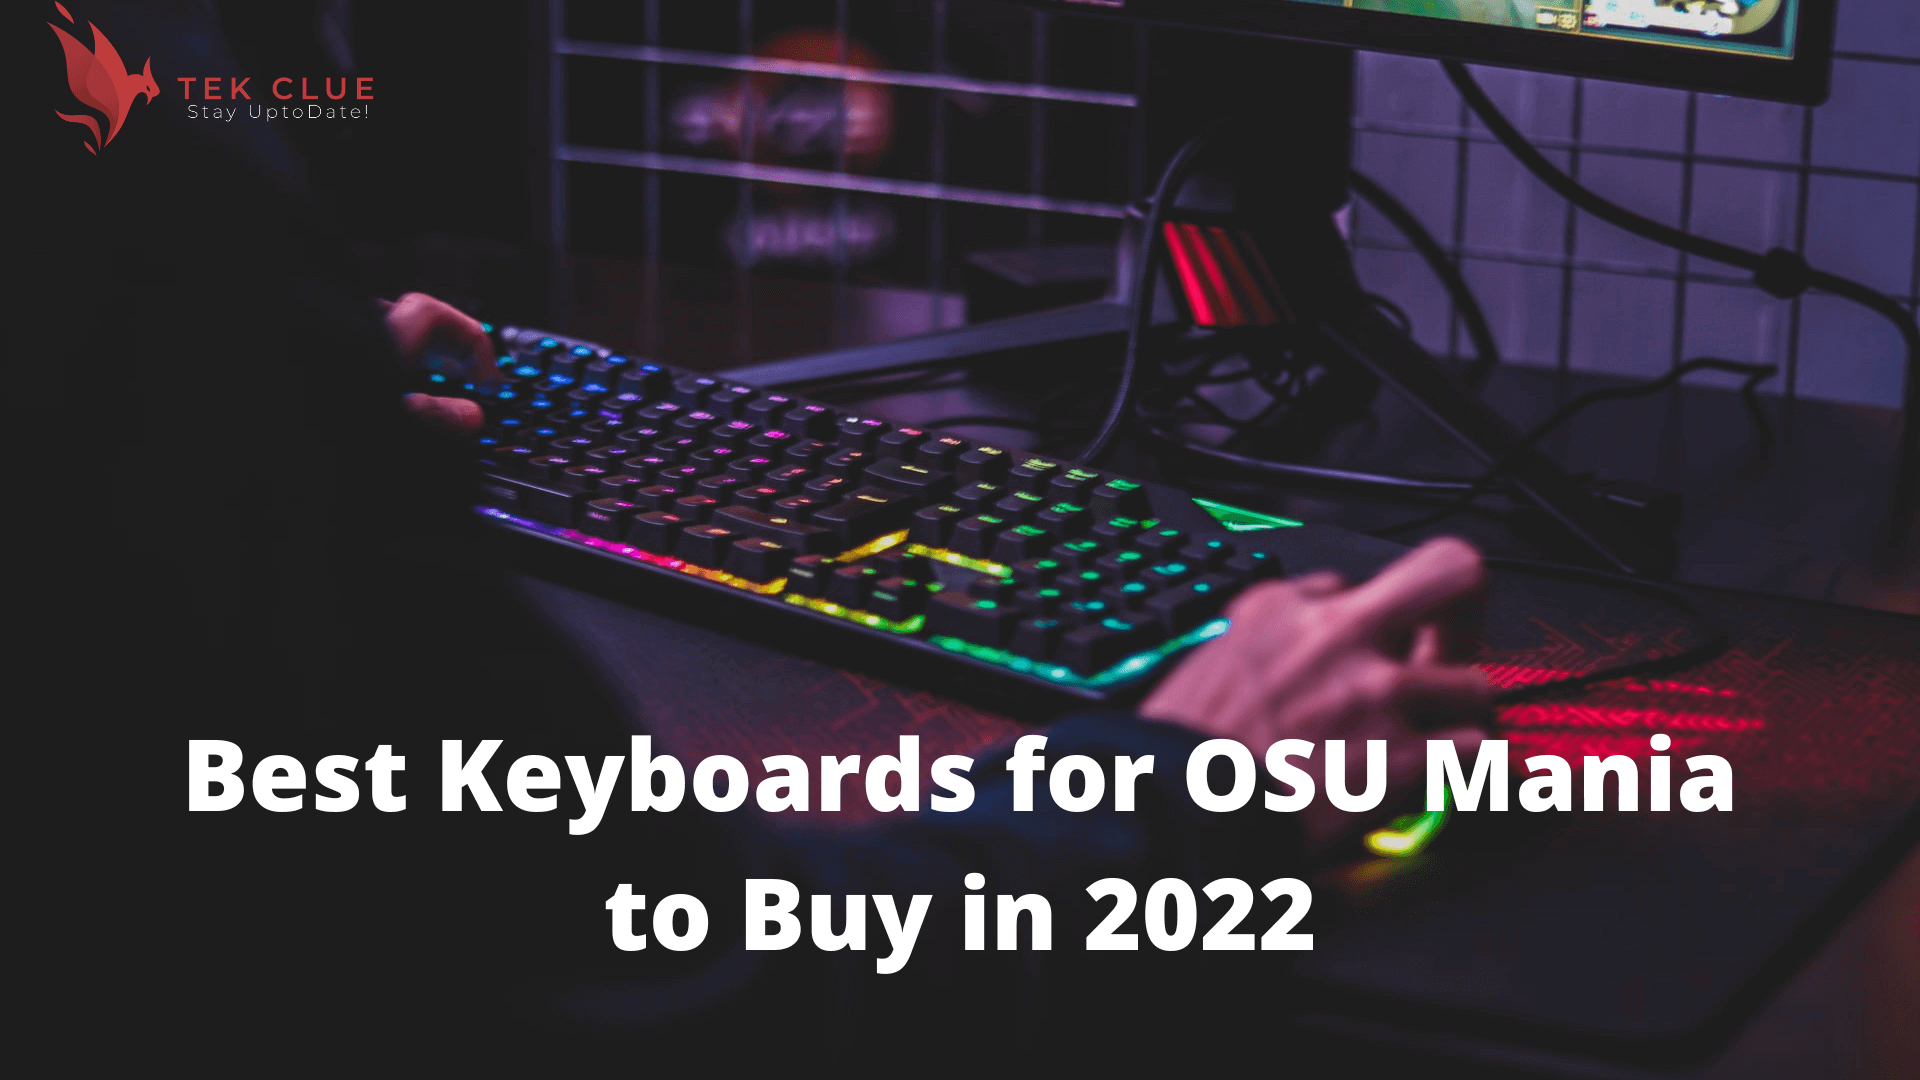 Best Keyboards for OSU Mania